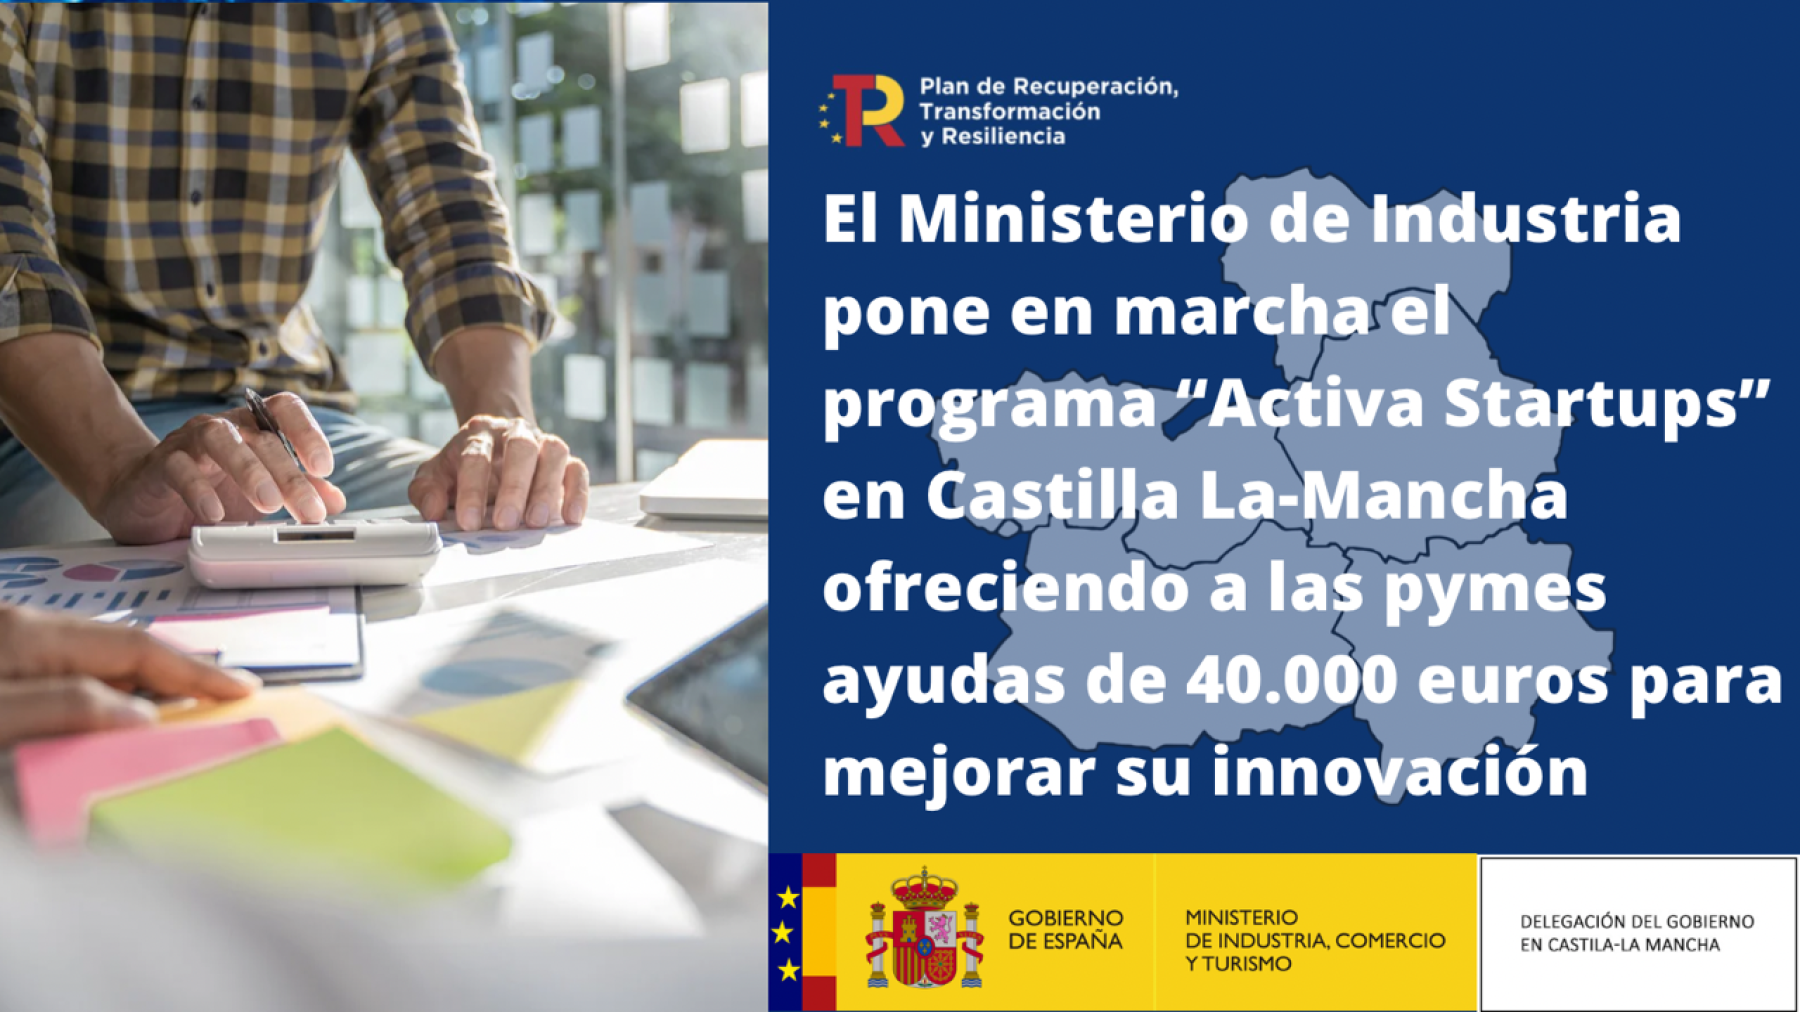 El Ministerio de Industria pone en marcha el programa “Activa Startups” en Castilla La-Mancha ofreciendo a las pymes ayudas de 40.000 euros para mejorar su innovación 